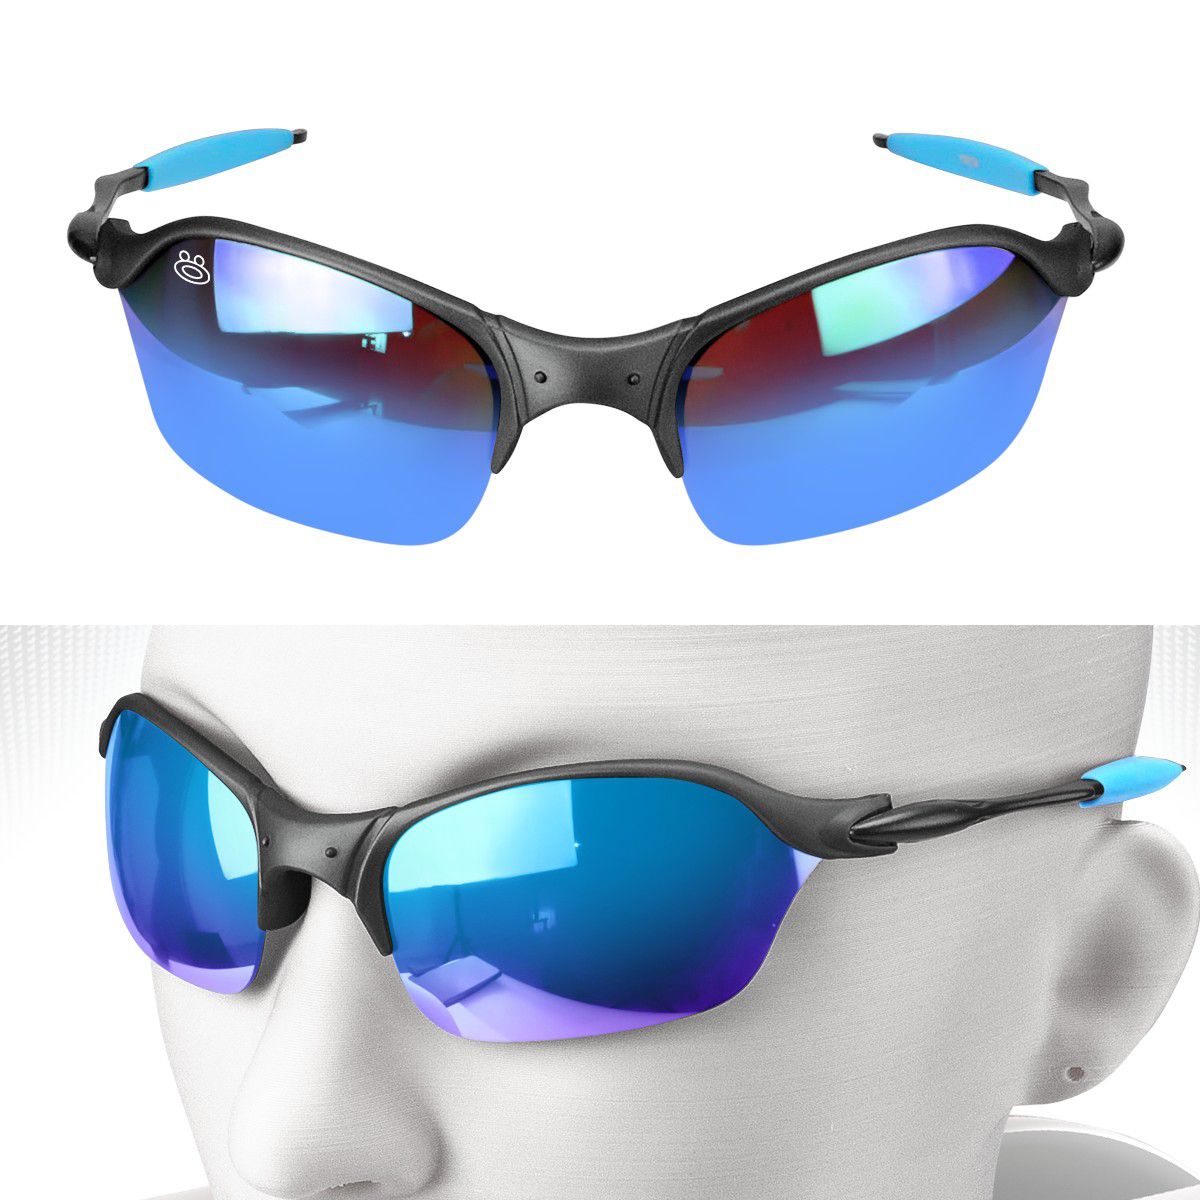 Óculos Masculino Proteção Uv Juliet Mandrake presente - Orizom